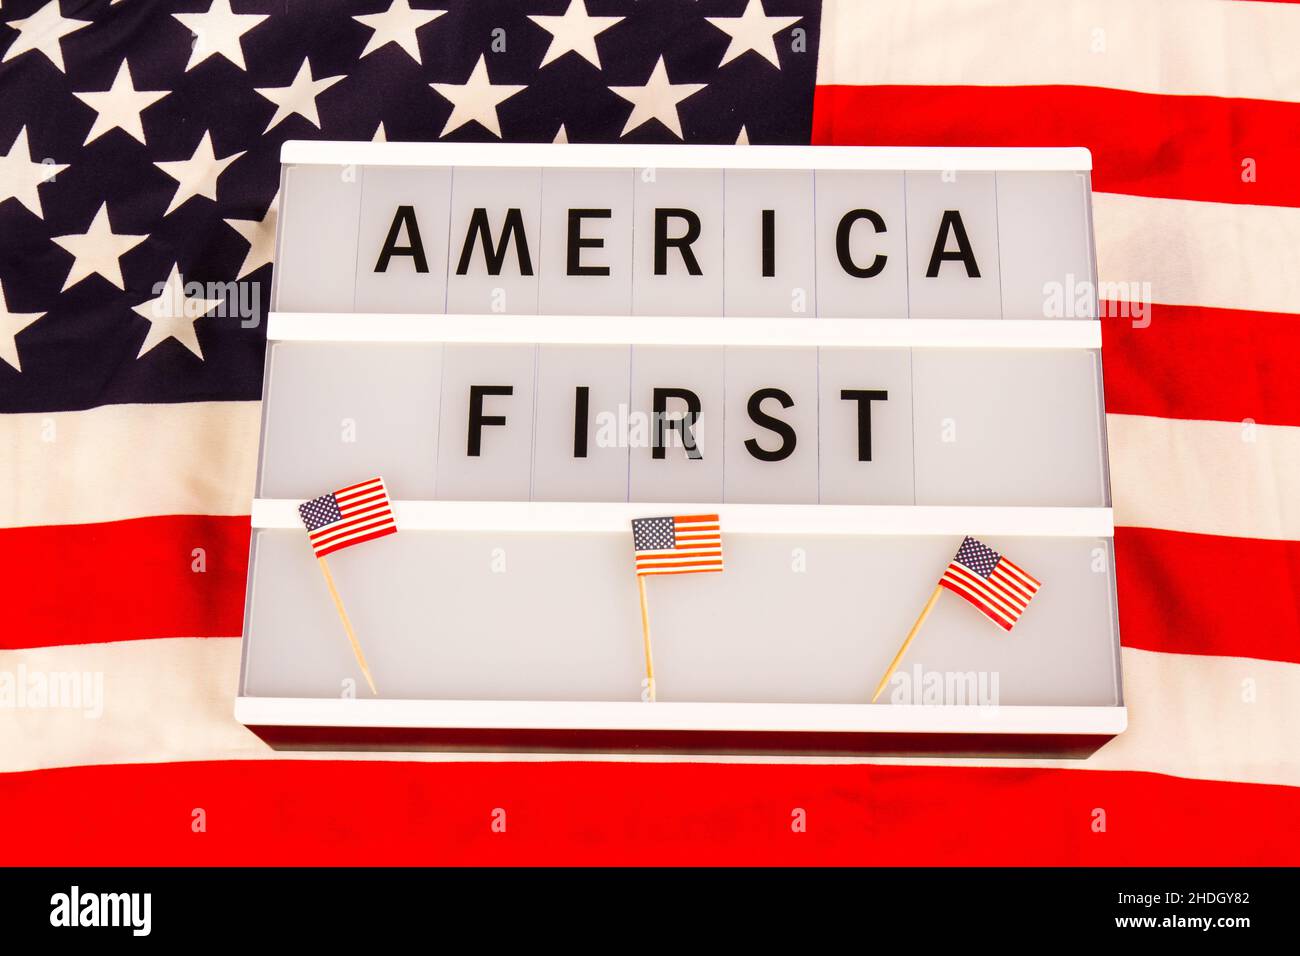 Politik, Slogan, amerika zuerst, Slogans Stockfoto